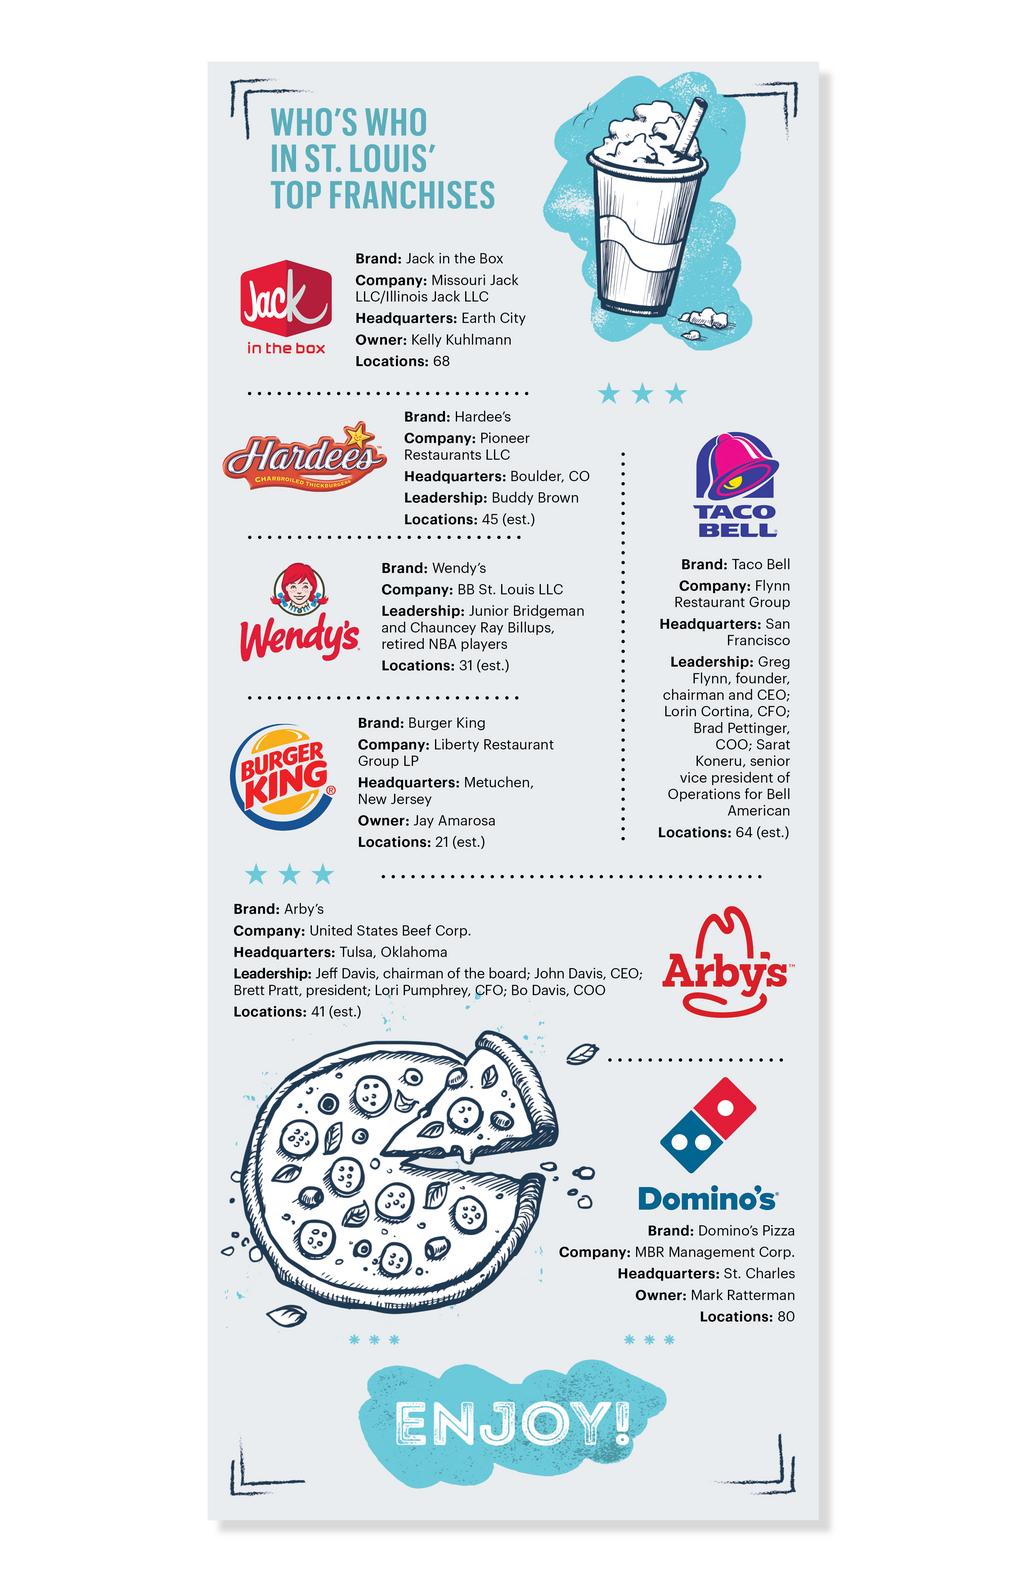 Domino's Pizza franchise information - En savoir plus sur Domino's